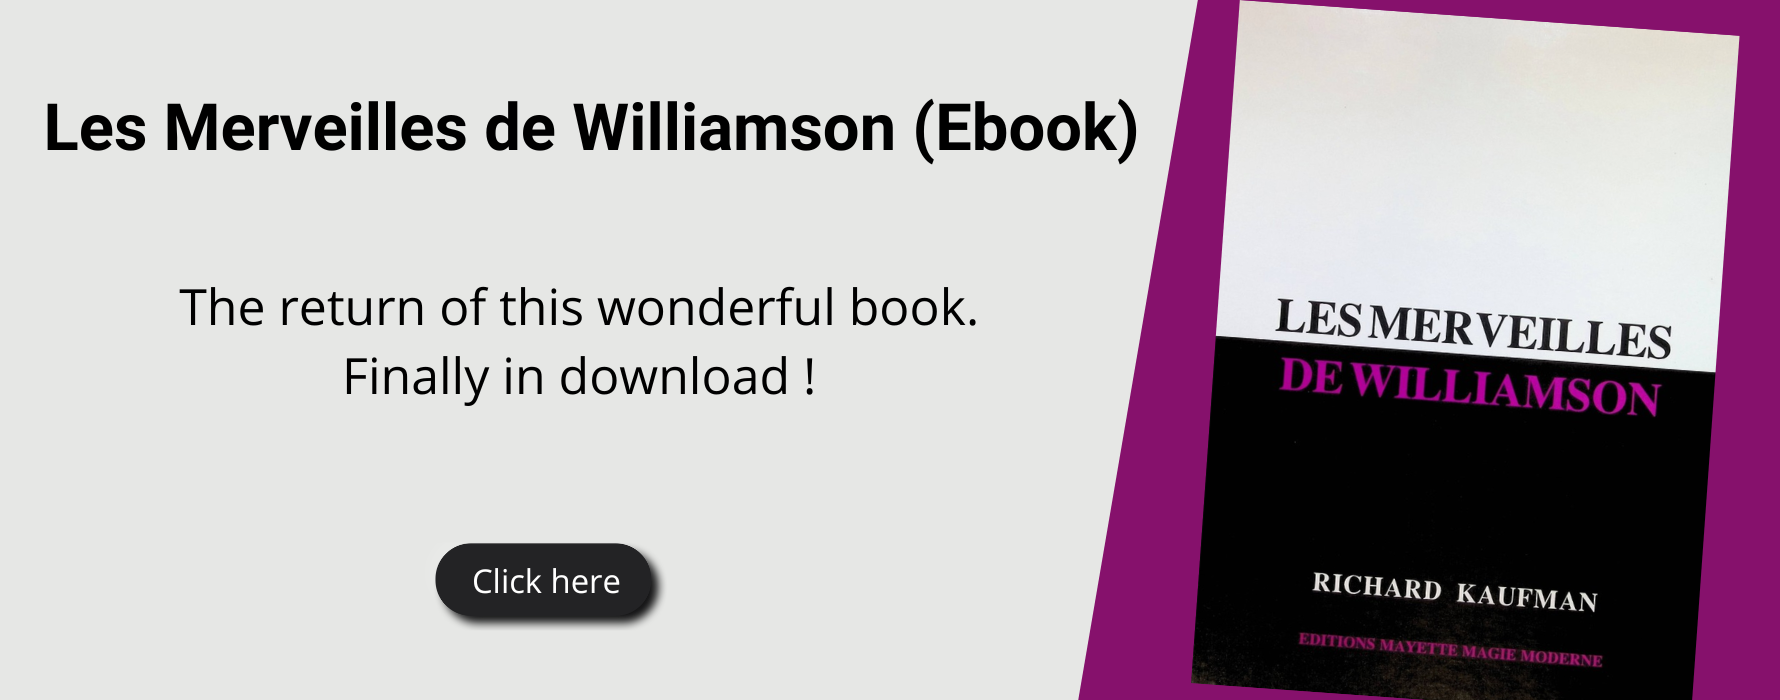 Les Merveilles de Williamson (Ebook)